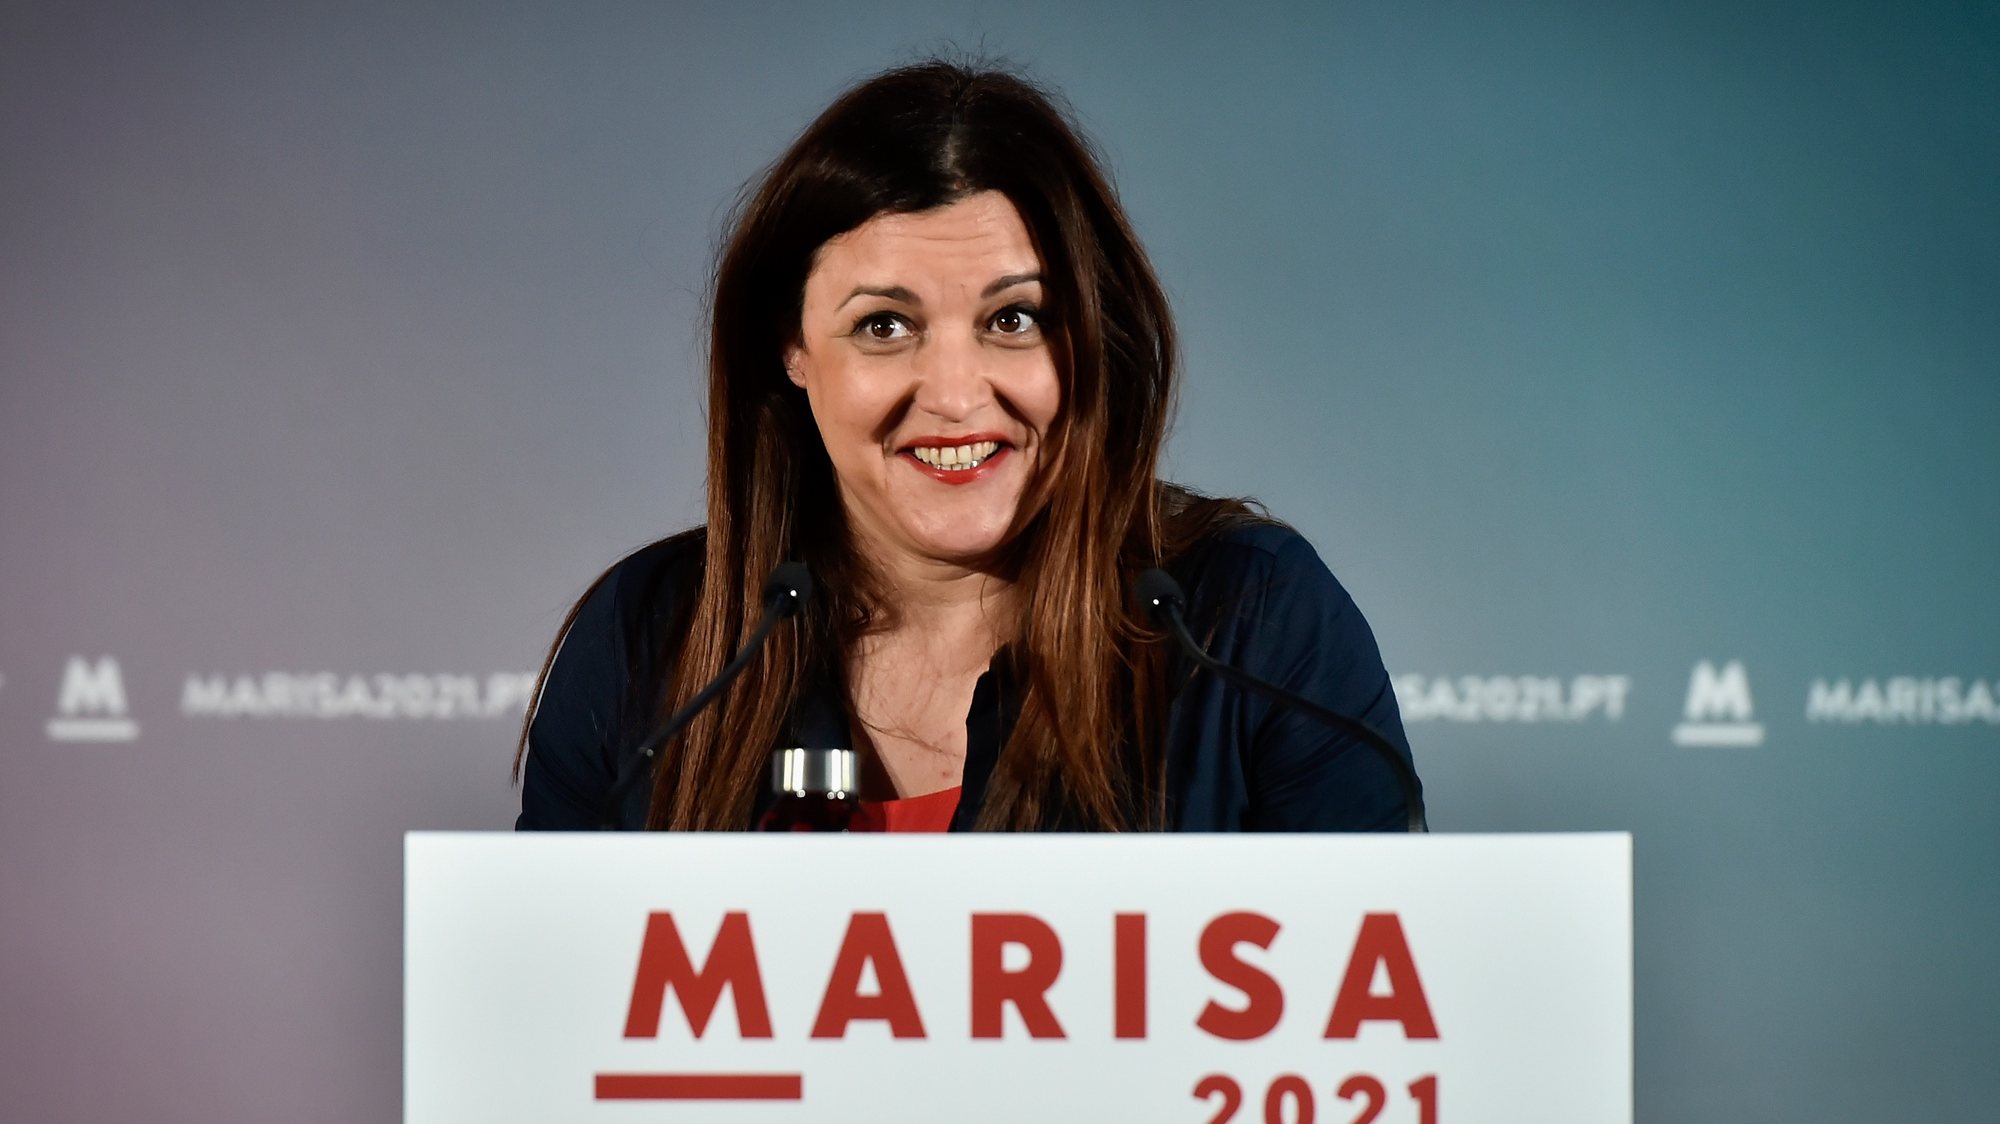 A candidata às eleições presidenciais, Marisa Matias, durante um comício virtual na Sala Multiusos da Associação Comercial de Viseu, 16 de janeiro de 2021. NUNO ANDRÉ FERREIRA/LUSA